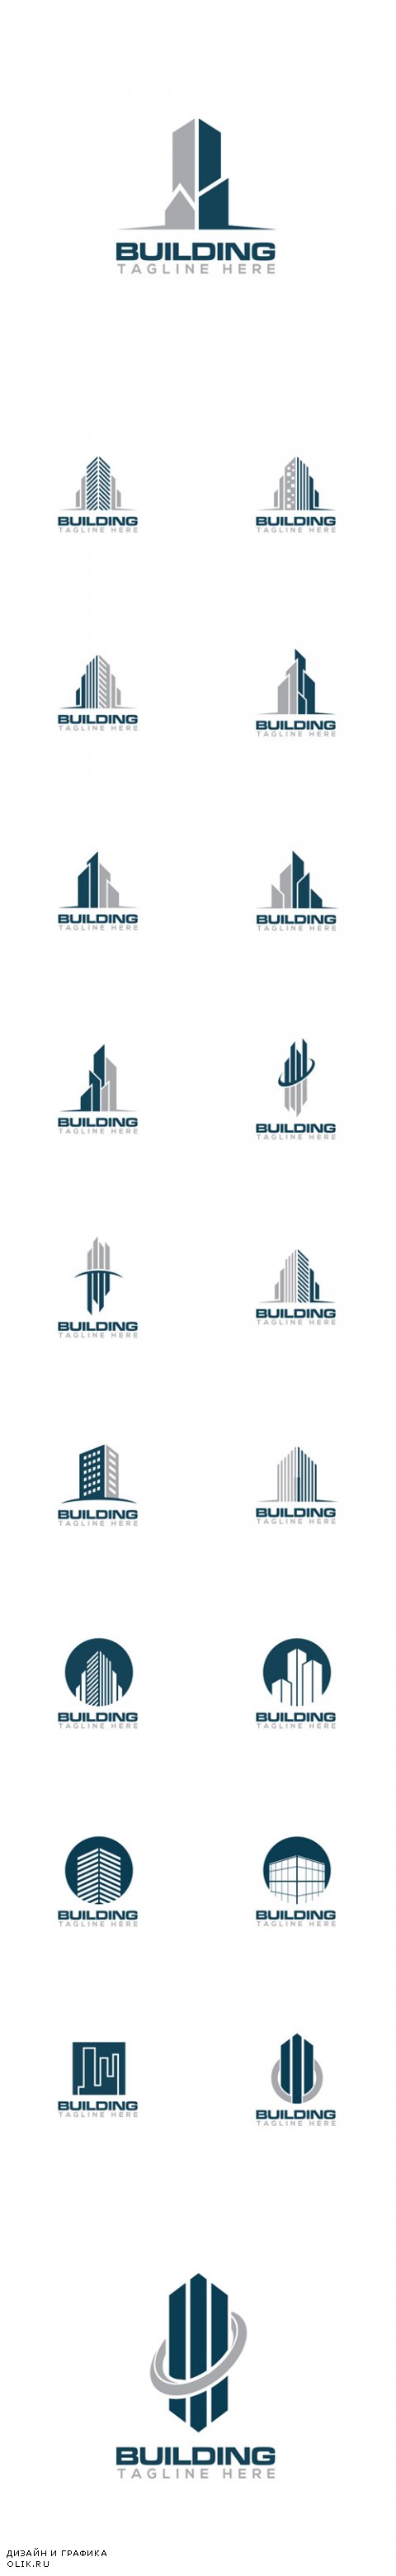 Vector Building Creative Concept Logo Design